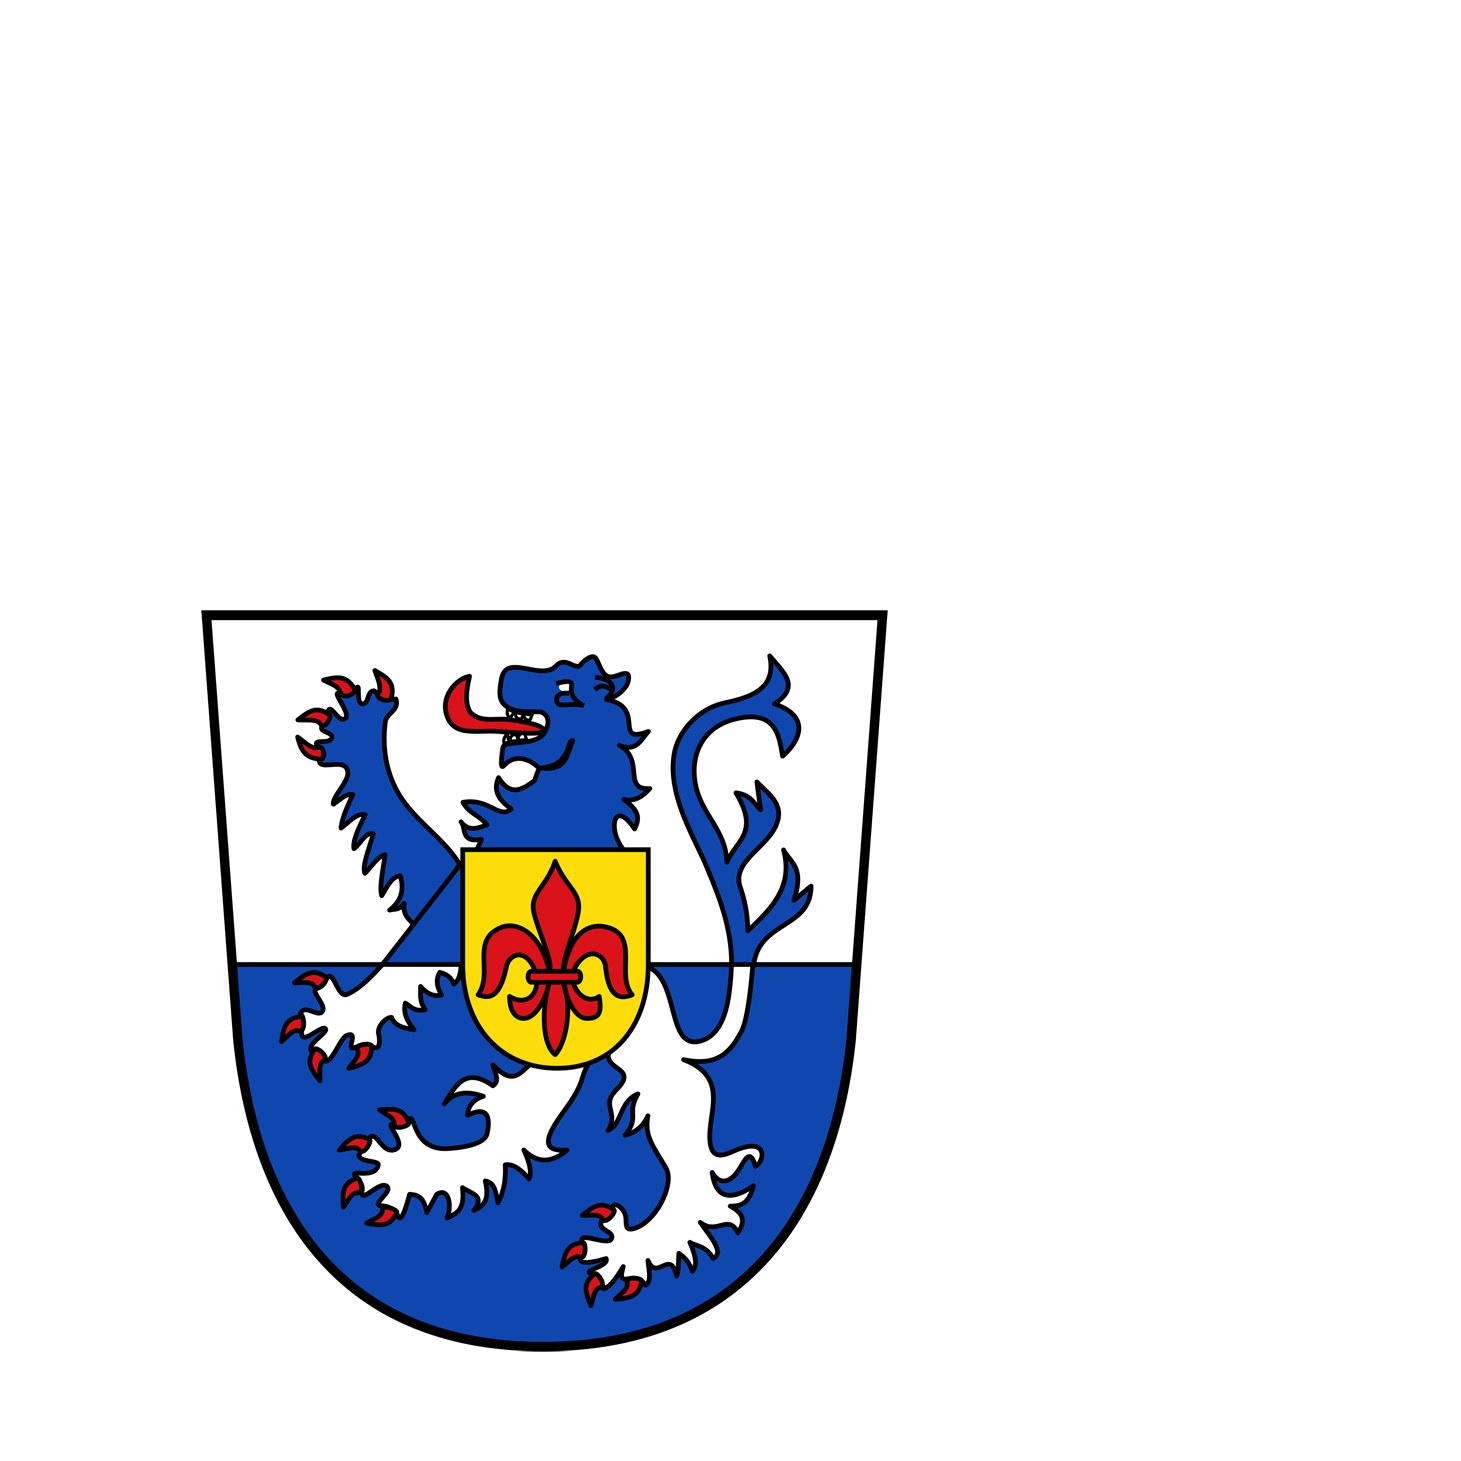 Wappen des Landkreis st. Wendel - © Landkreis St. Wendel